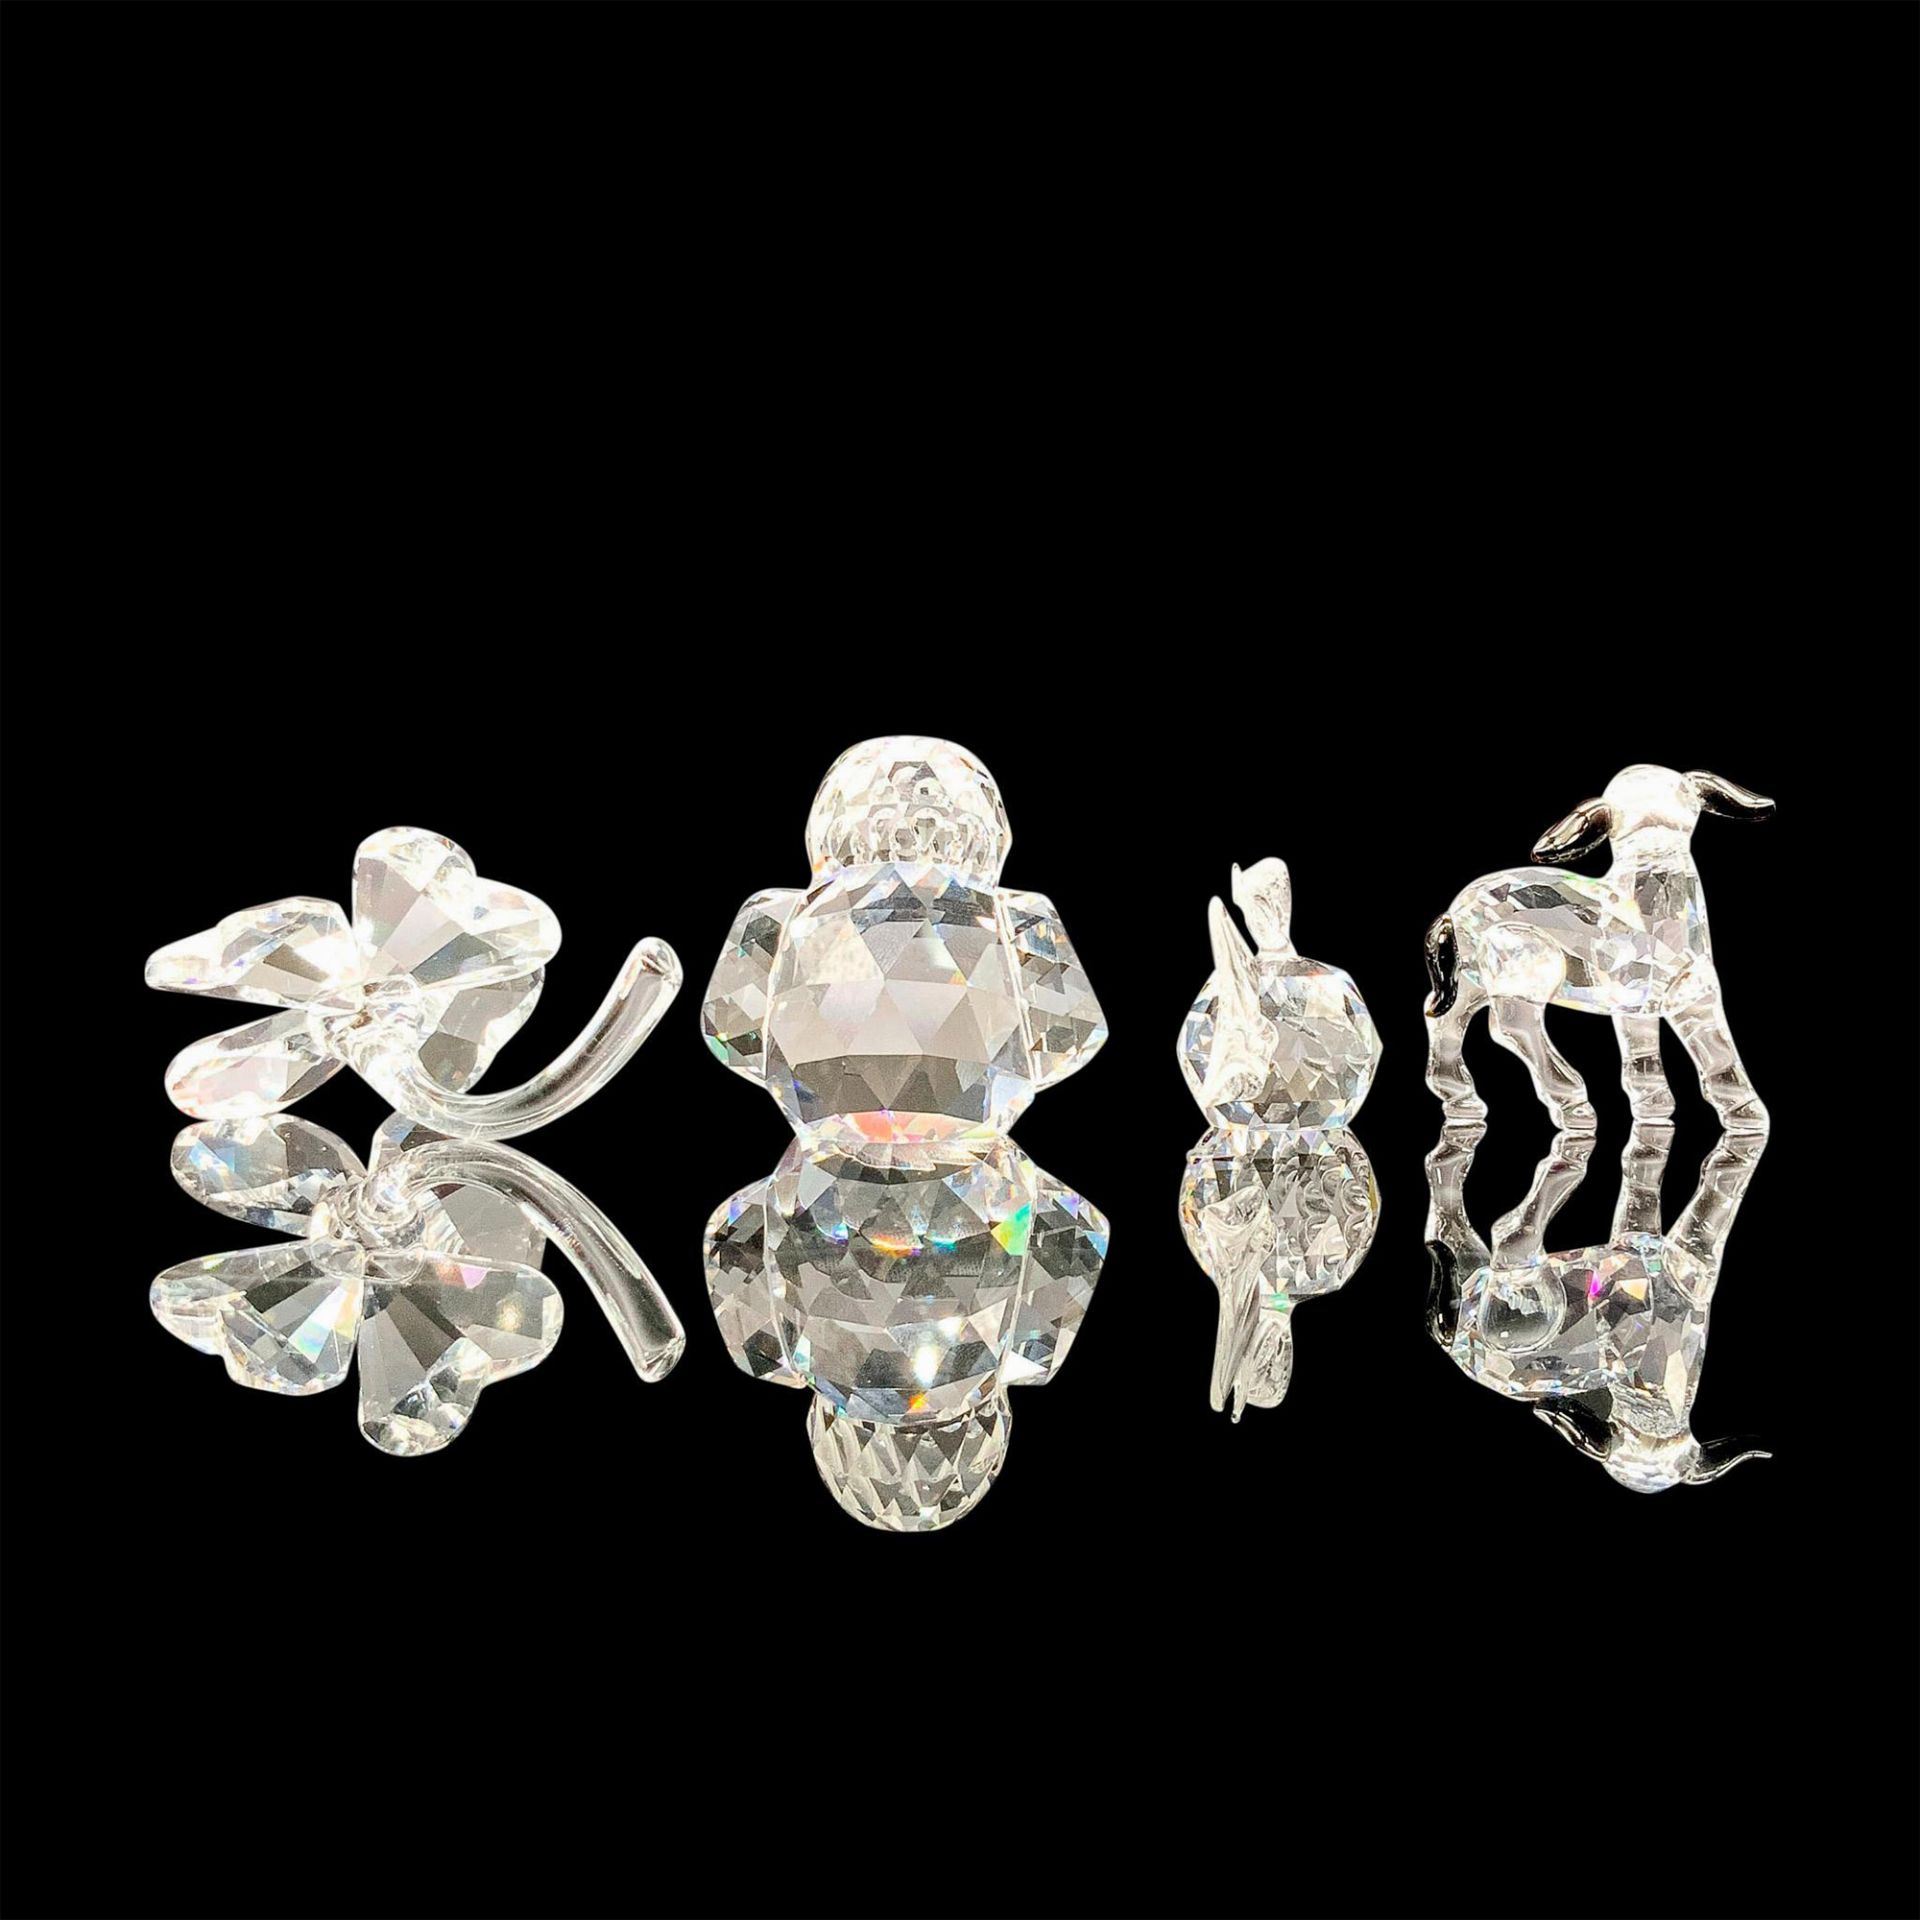 4pc Crystal Figure Set, Owl, Lamb, Blowfish and Shamrock - Image 2 of 3